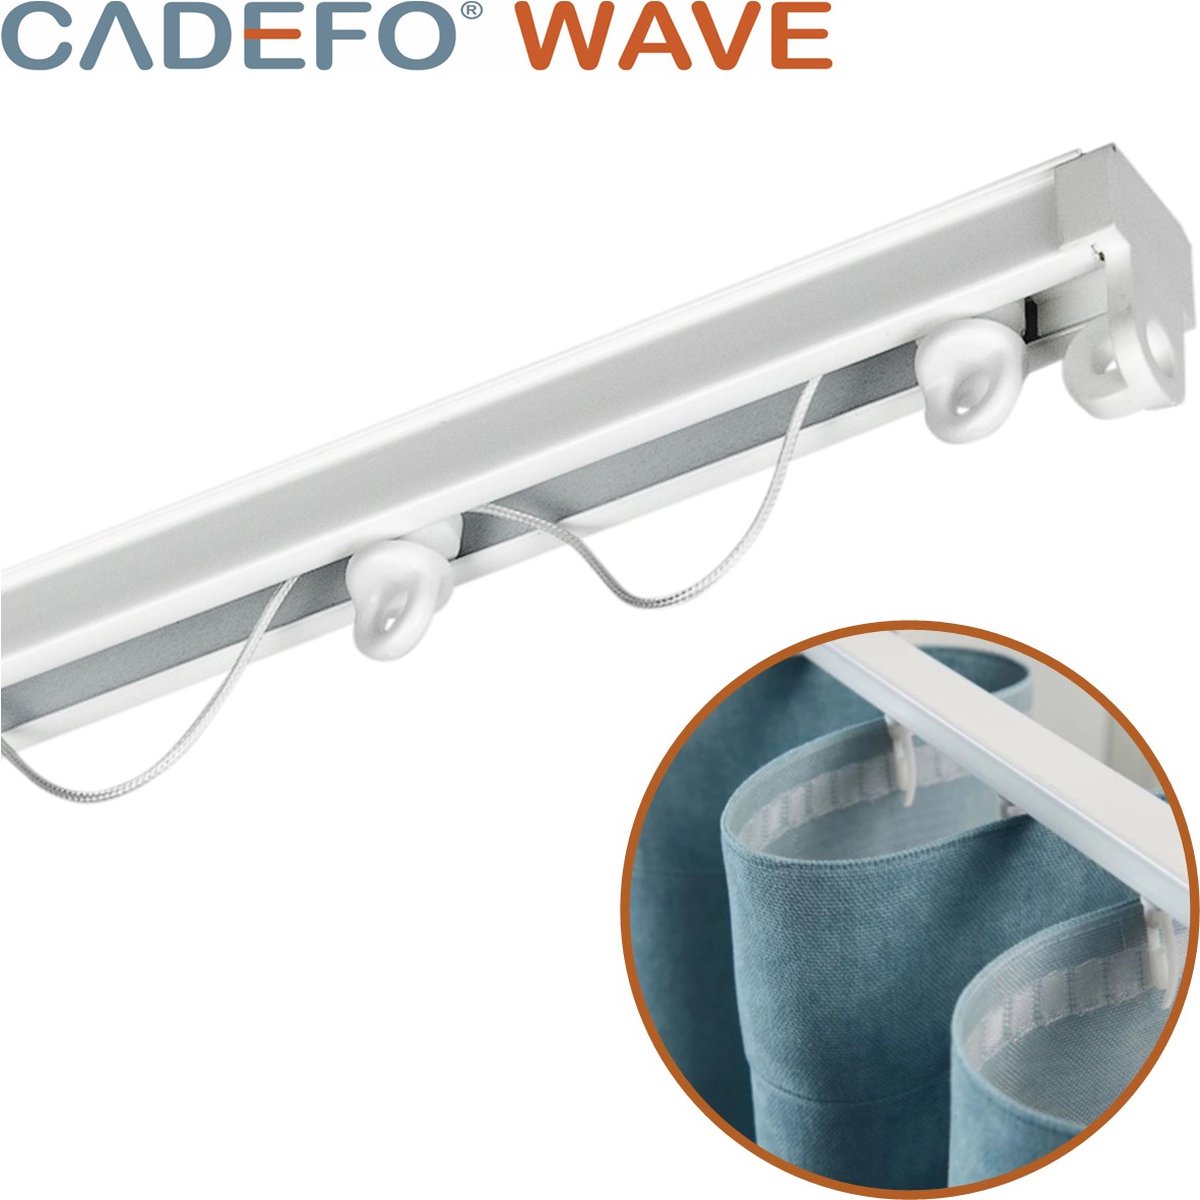 CADEFO WAVE (401 - 450 cm) Gordijnrails - Compleet op maat! - UIT 1 STUK - Leverbaar tot 6 meter - Plafondbevestiging - Lengte 448 cm